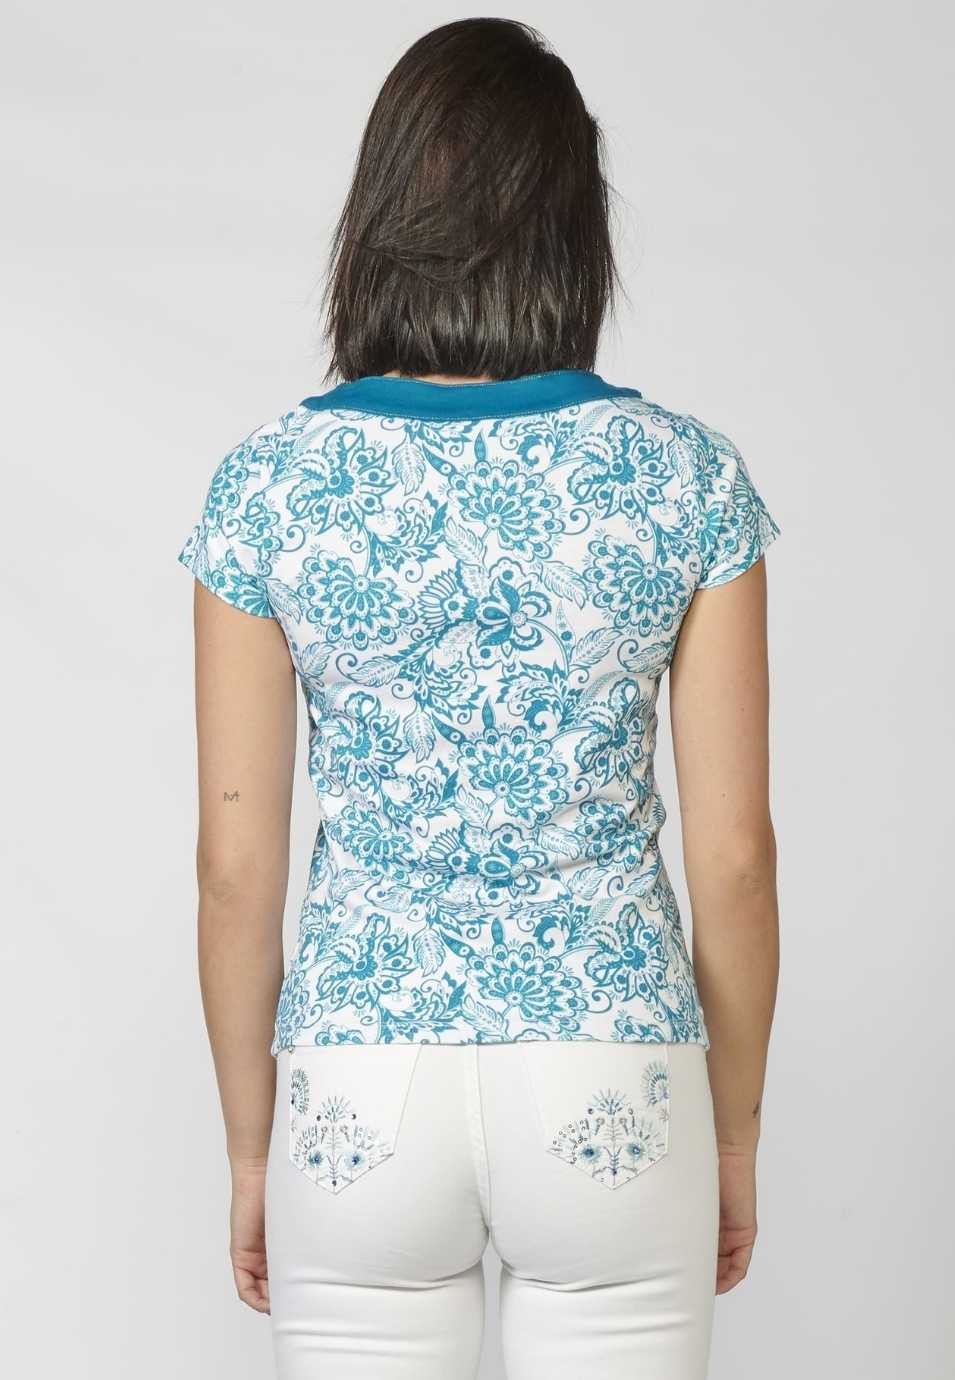 Camiseta Top manga corta de Algodón con Escote de Pico cruzado y Estampado Floral para Mujer 4